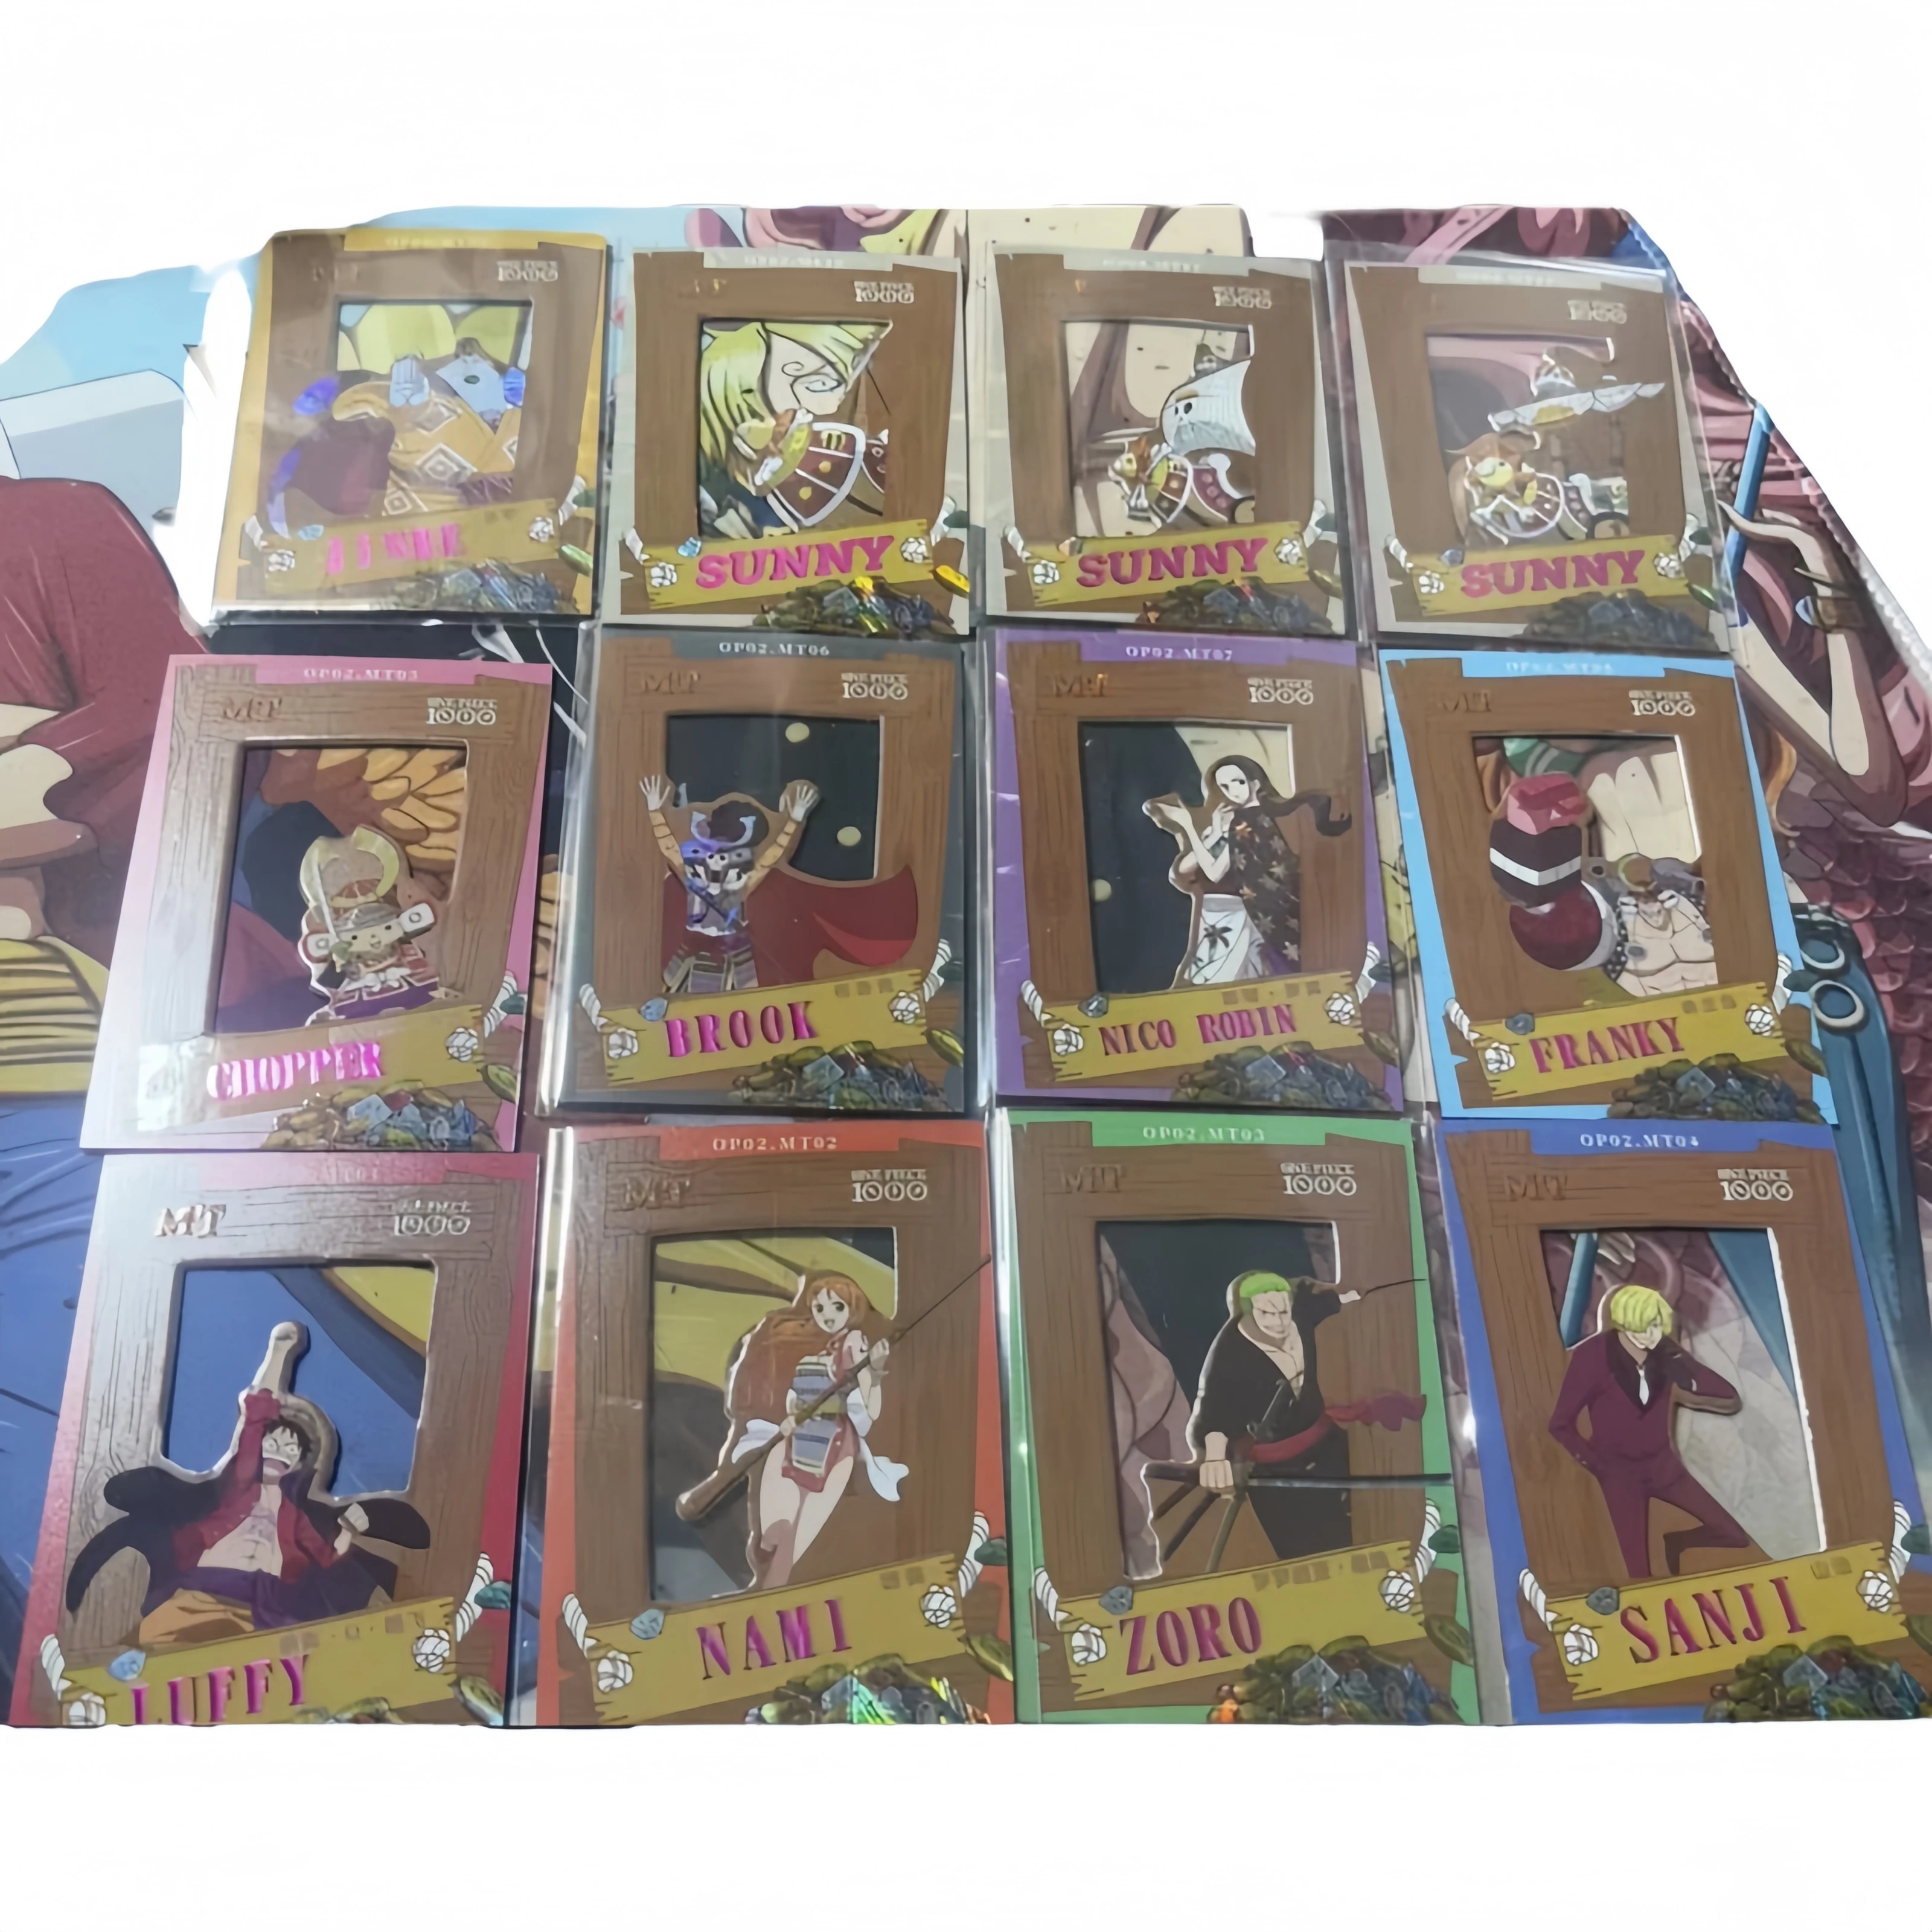 

Аниме One Piece Luffy Zoro Hancock Vivi Robin Sanji Nami Mt открытые открытки с окошком коллекционные карты игрушки рождественские подарки на день рождения